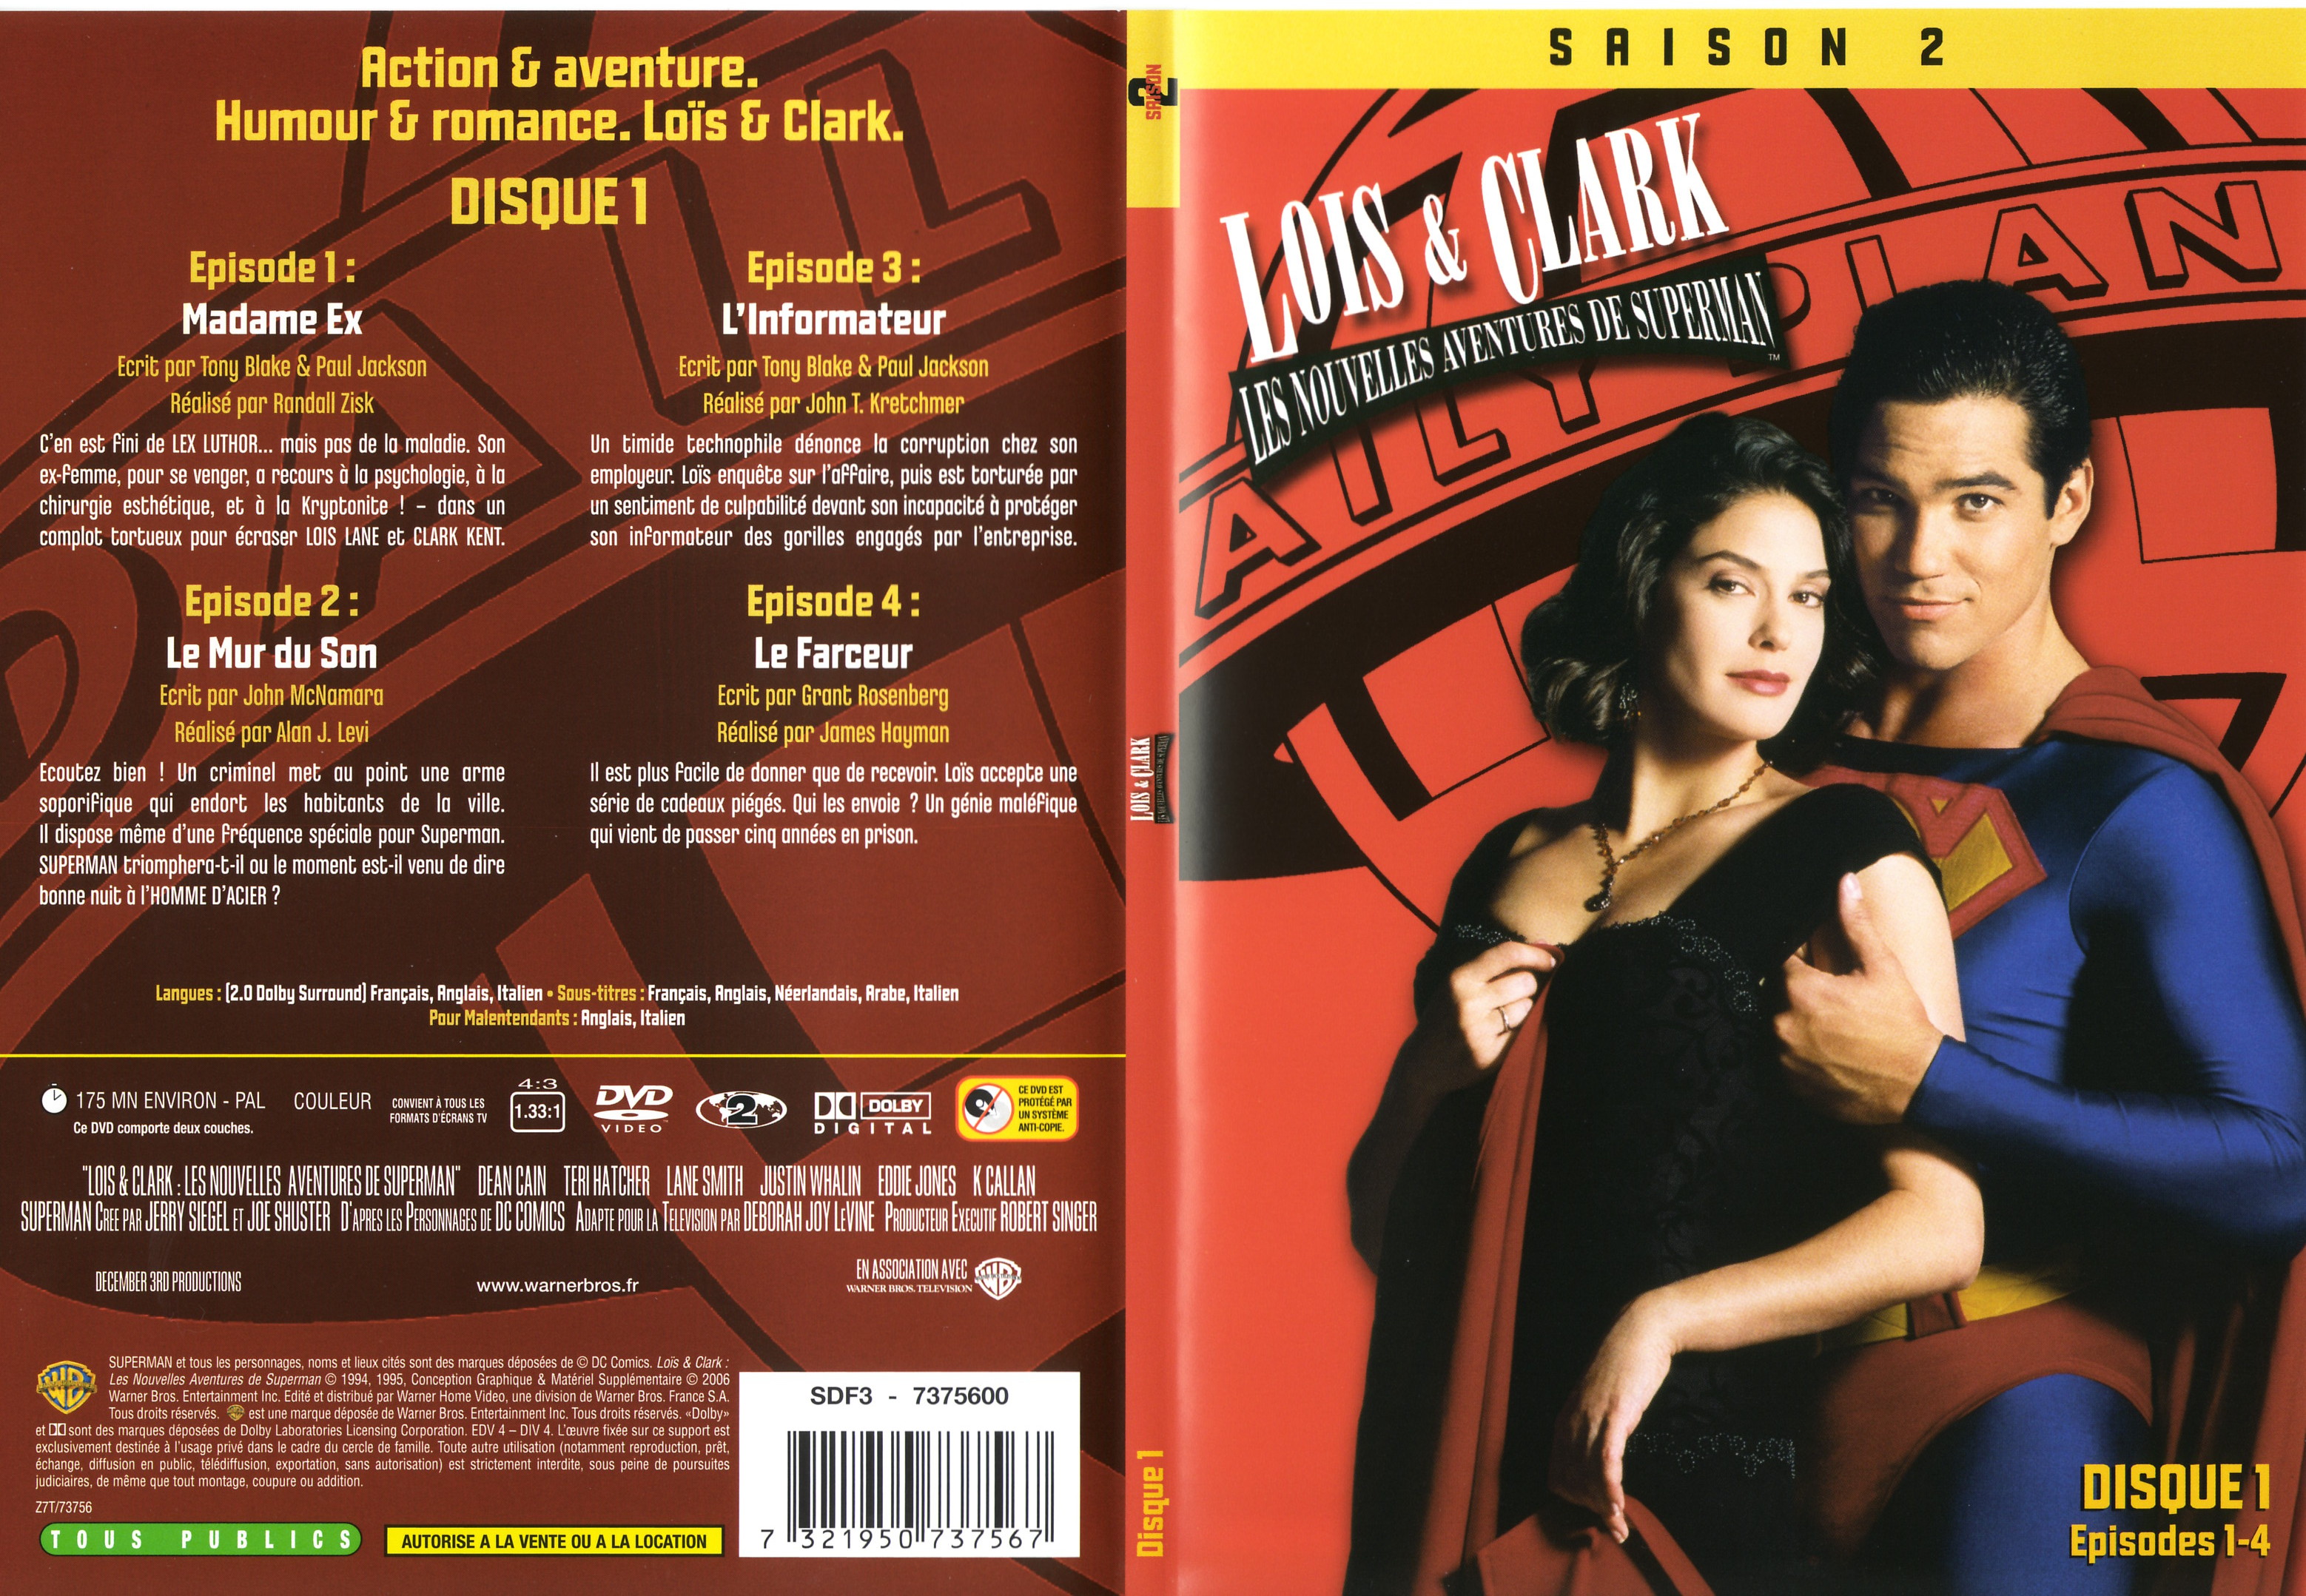 Jaquette DVD Lois et Clark Saison 2 vol 1